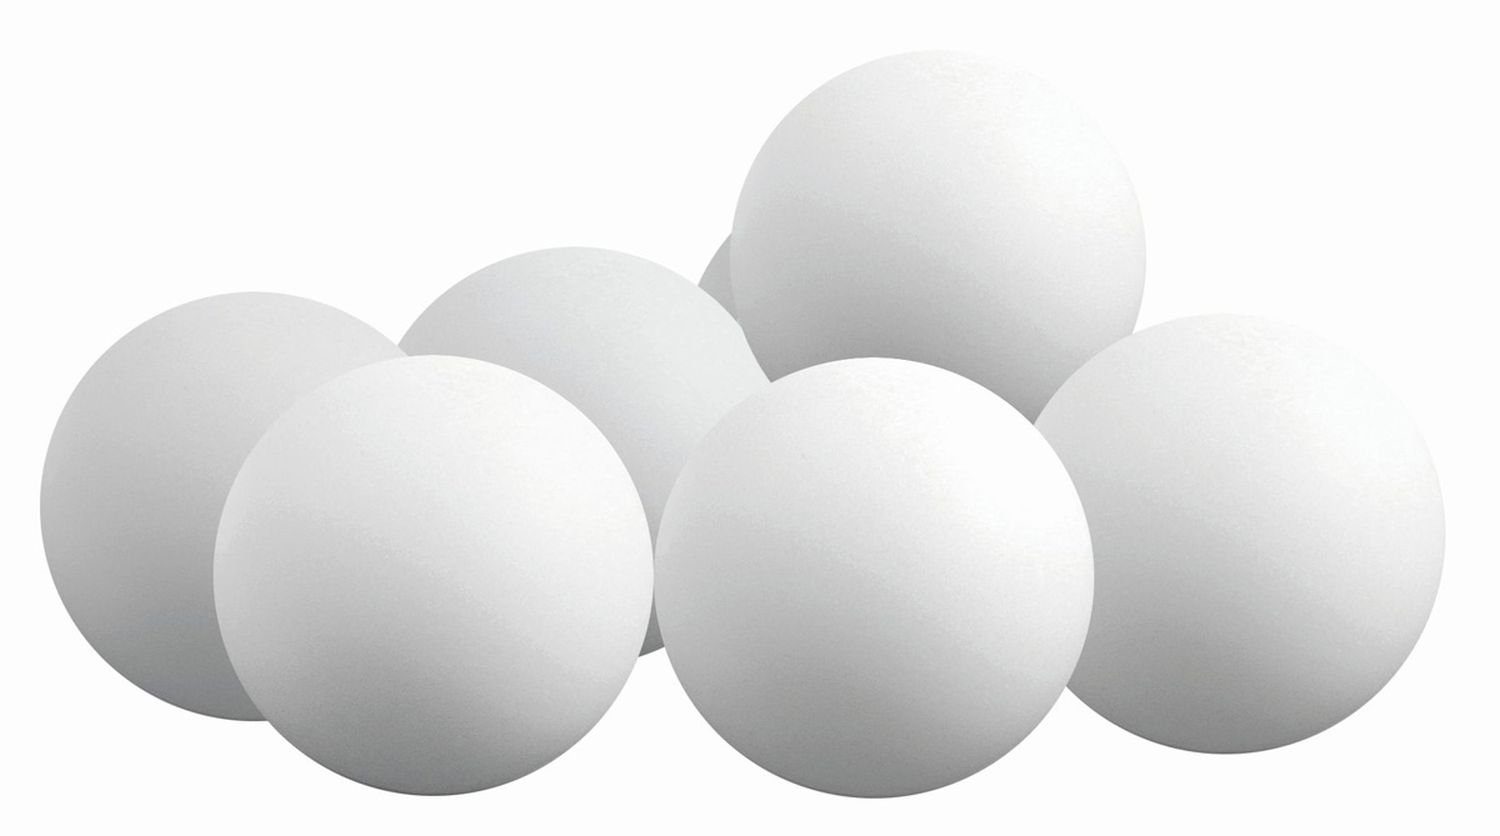 Sunflex Tischtennisball 1 Ball weiß, Tischtennis Bälle Tischtennisball Ball Balls | Sportbälle